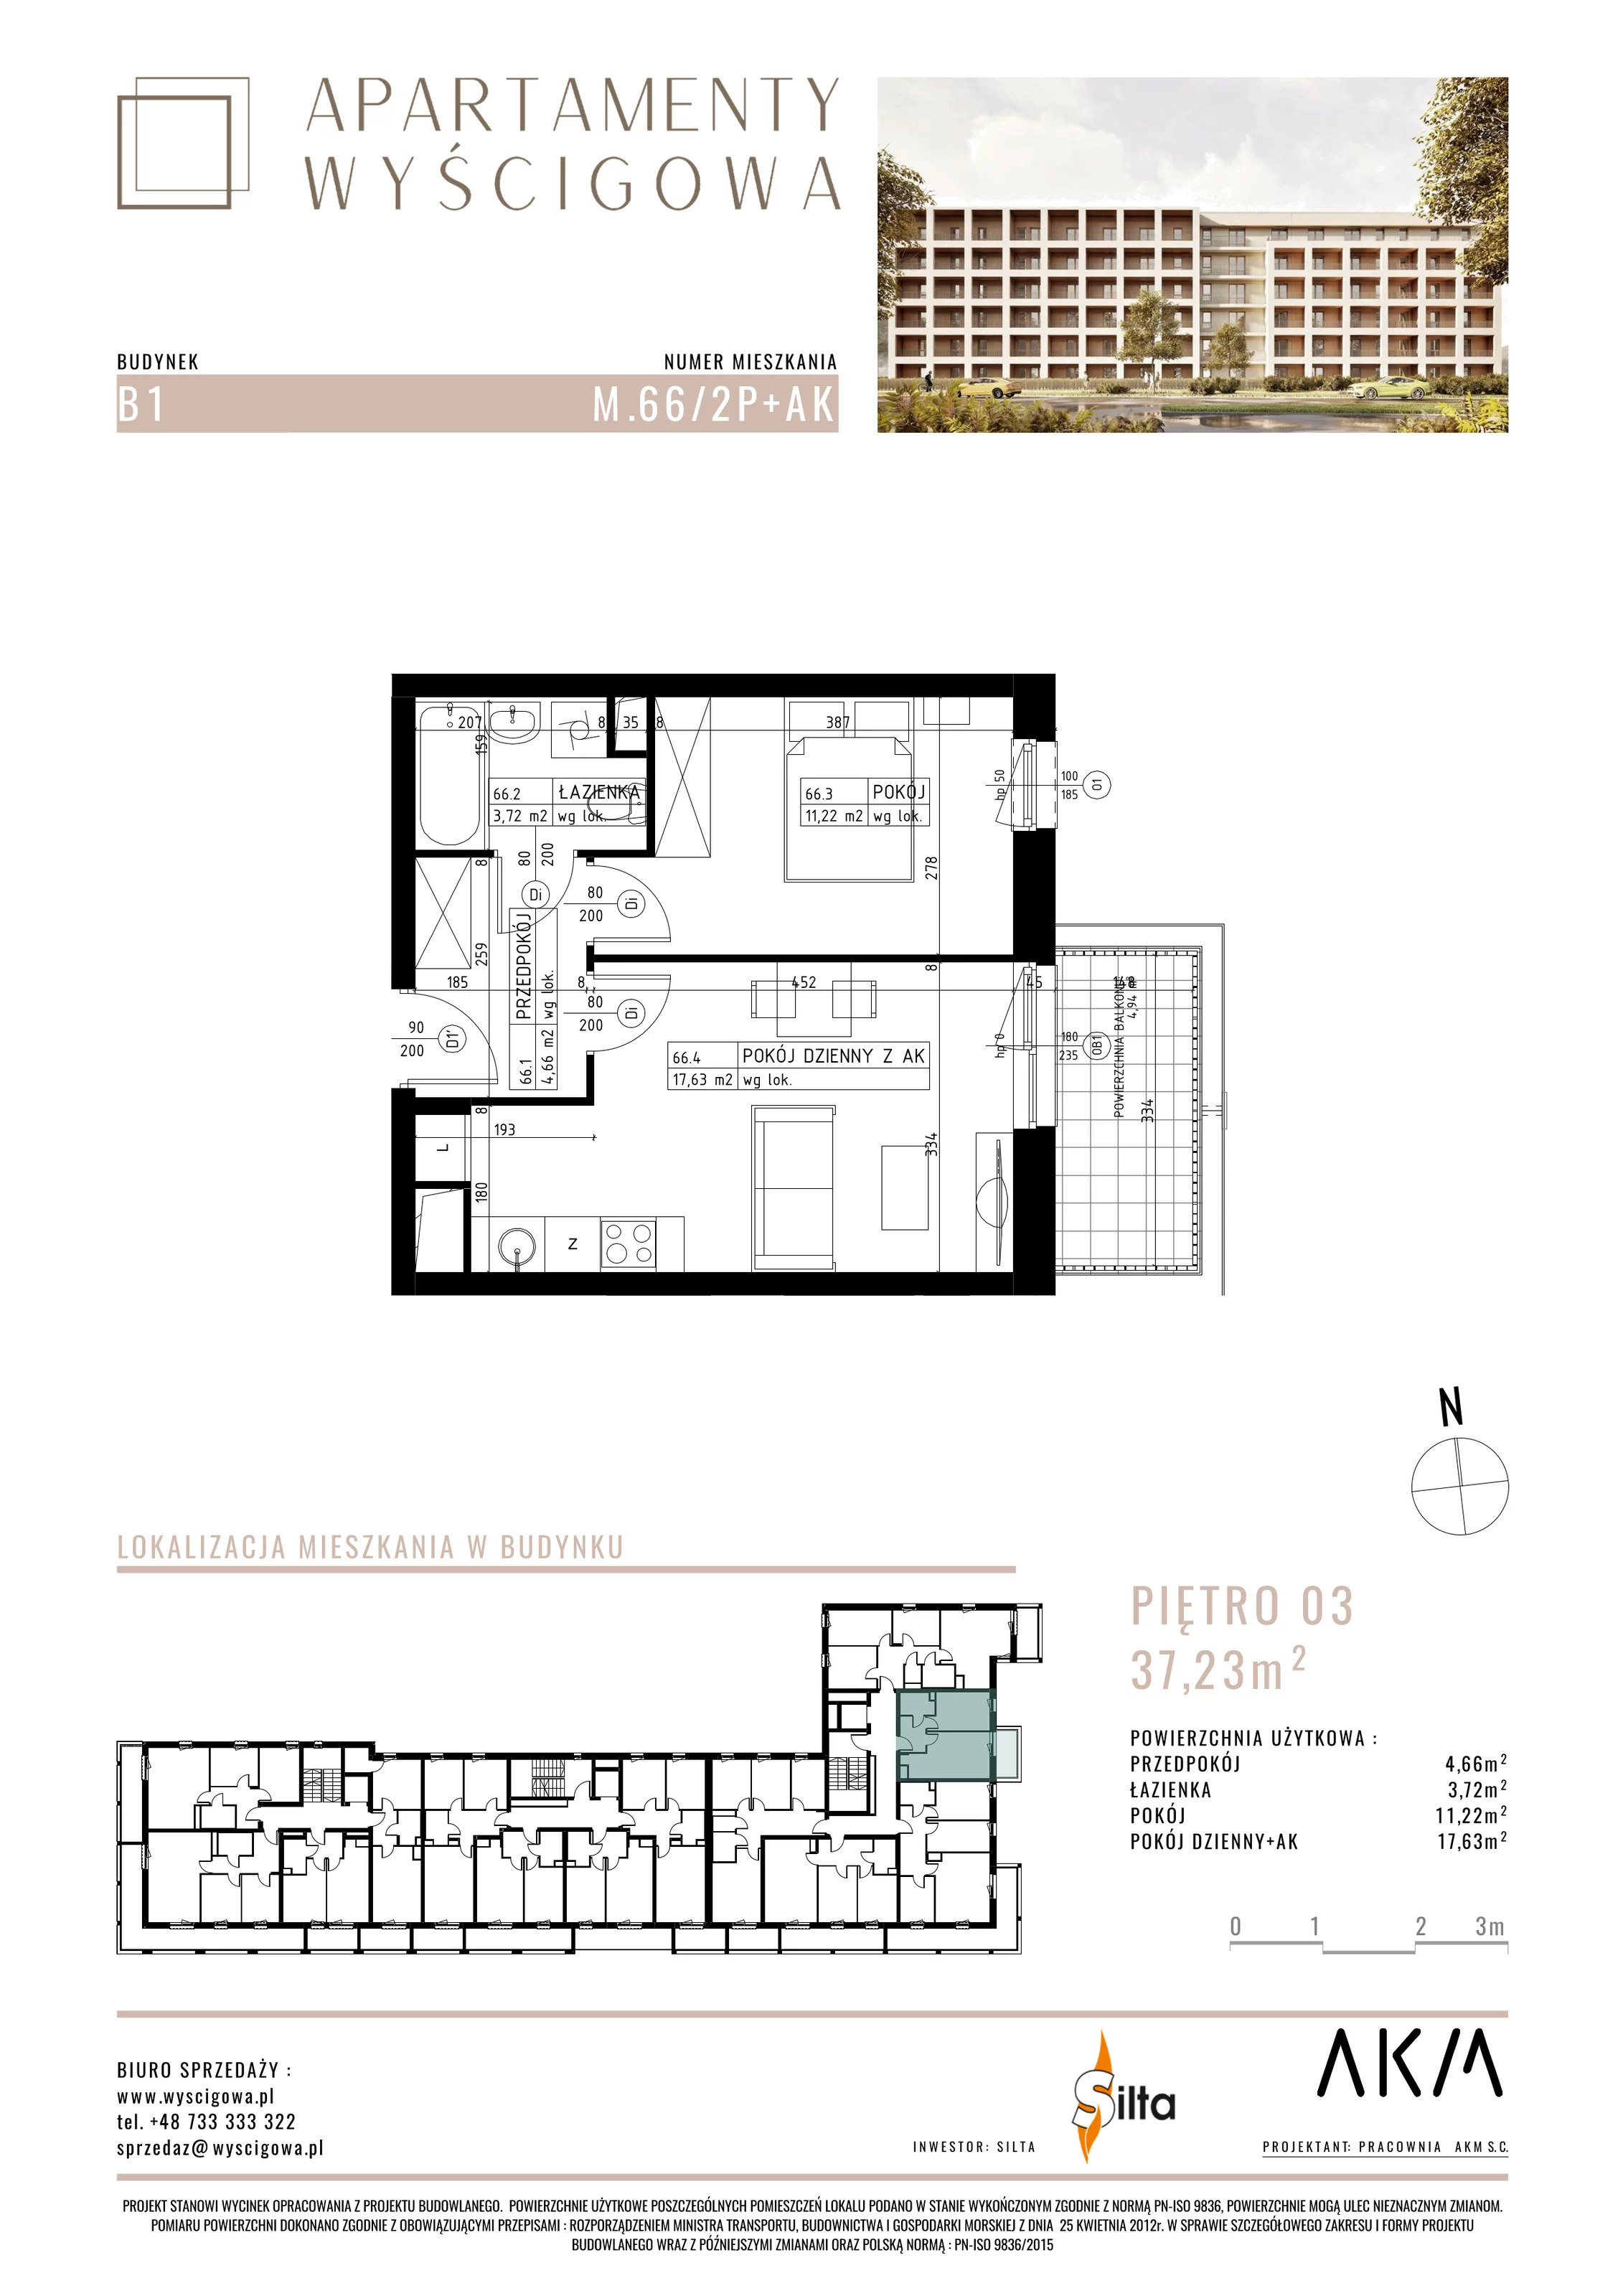 Mieszkanie 37,23 m², piętro 3, oferta nr B1.M66, Apartamenty Wyścigowa, Lublin, Dziesiąta, Dziesiąta, ul. Wyścigowa